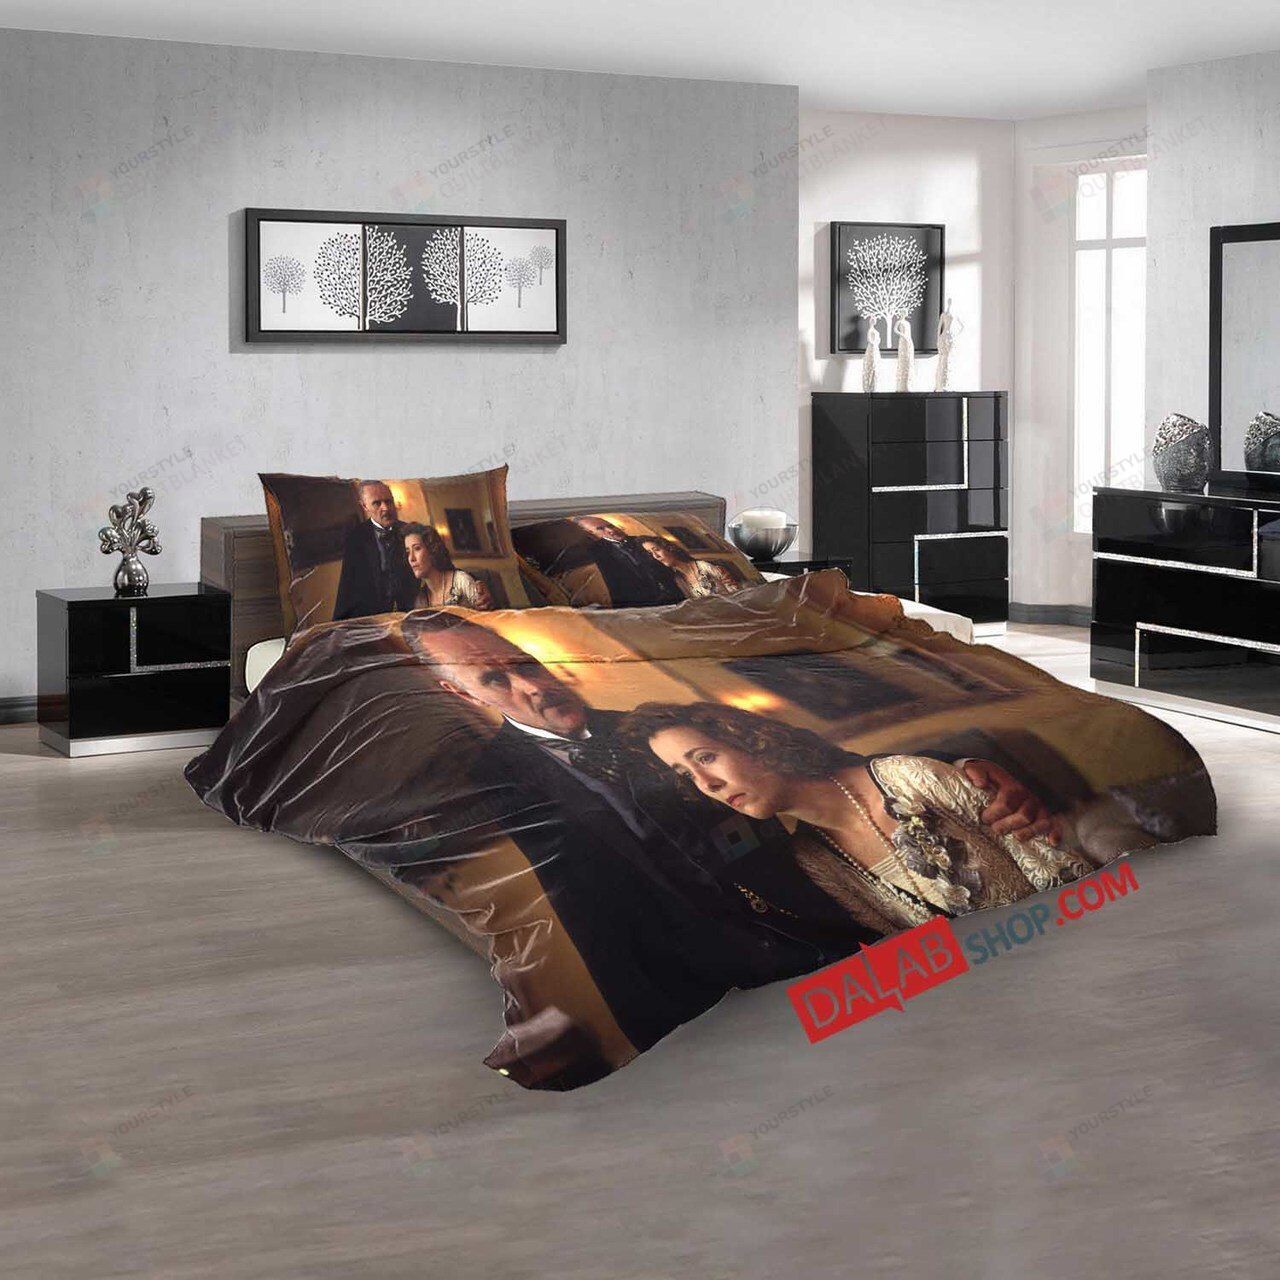 Movie Howards End N 3d Customized Duvet Cover Bedroom Sets Bedding Sets